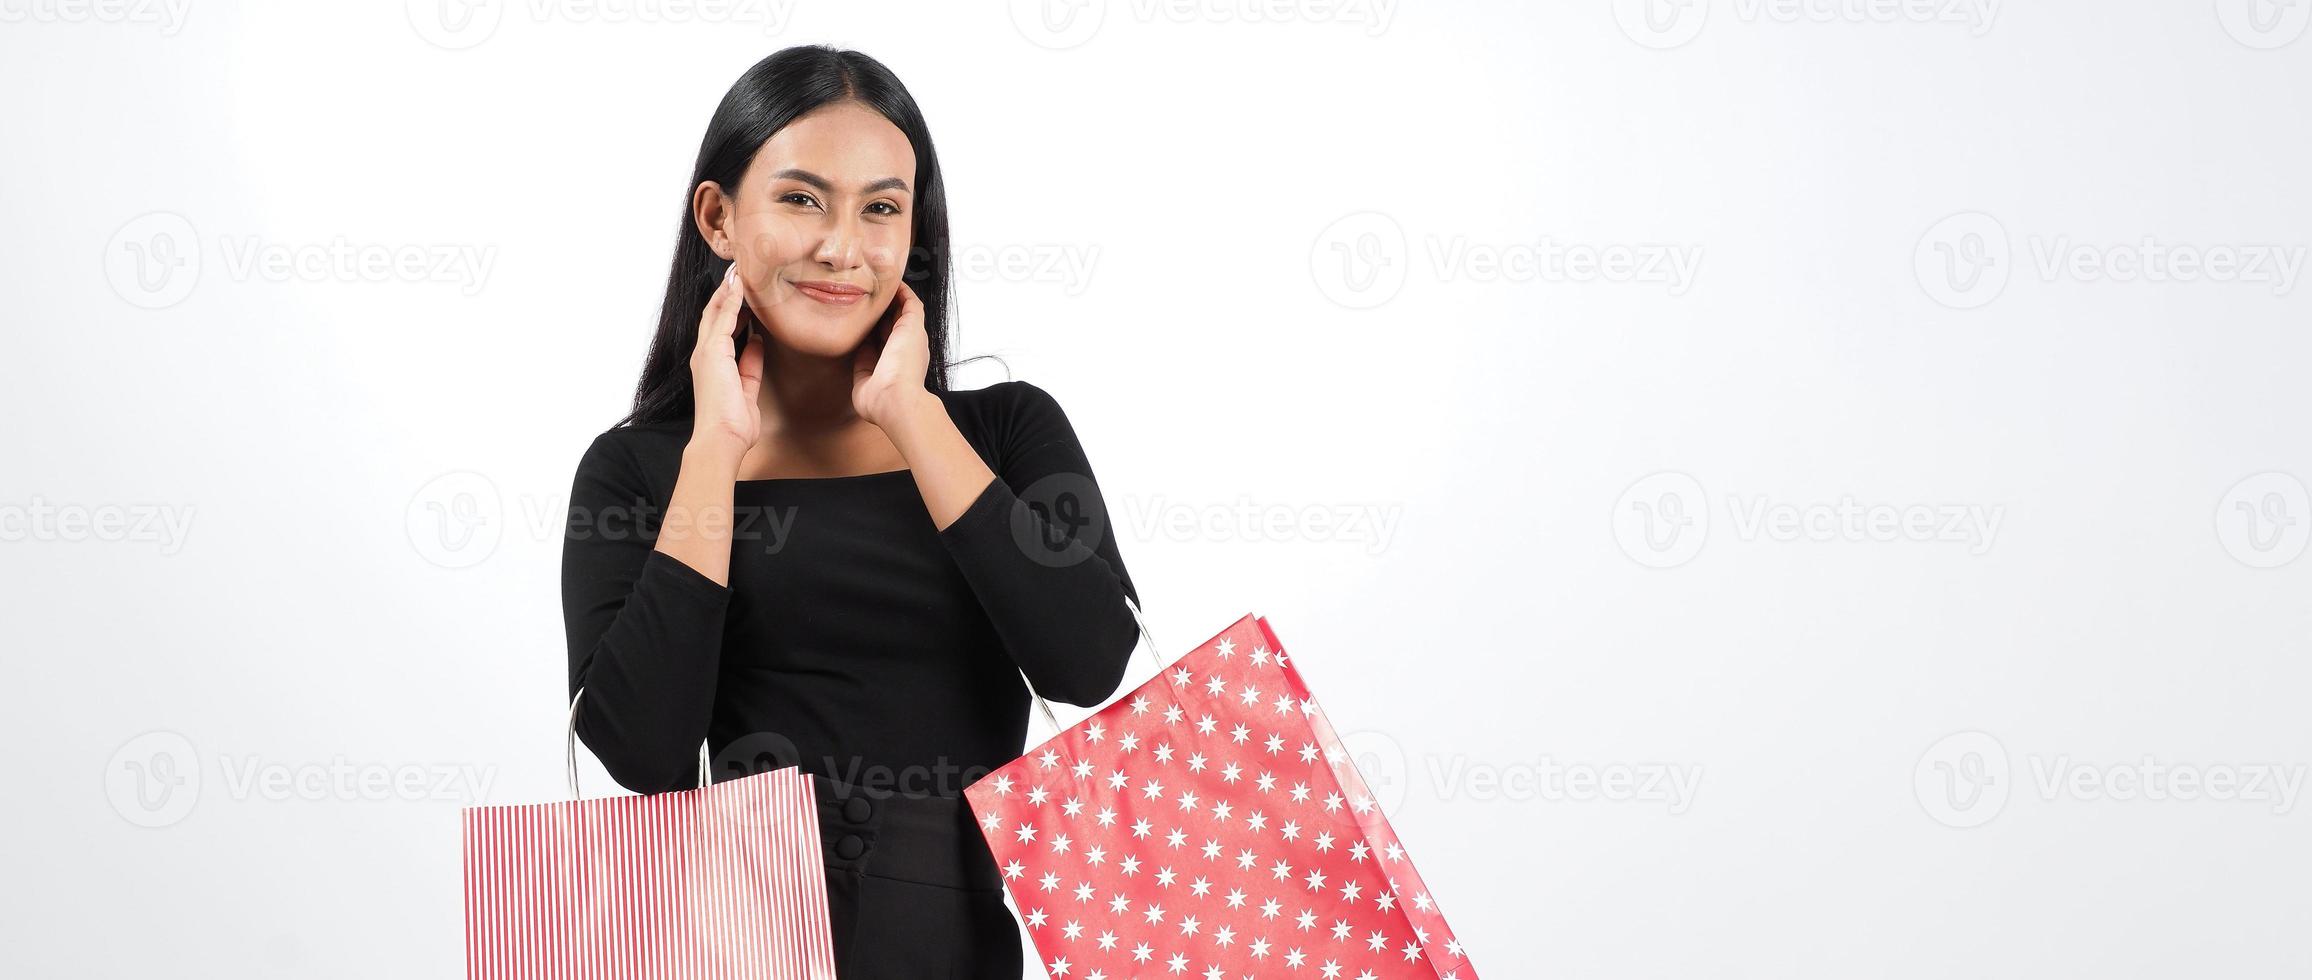 Frau einkaufen Konzept. glückliches Mädchen und Einkaufstüten foto